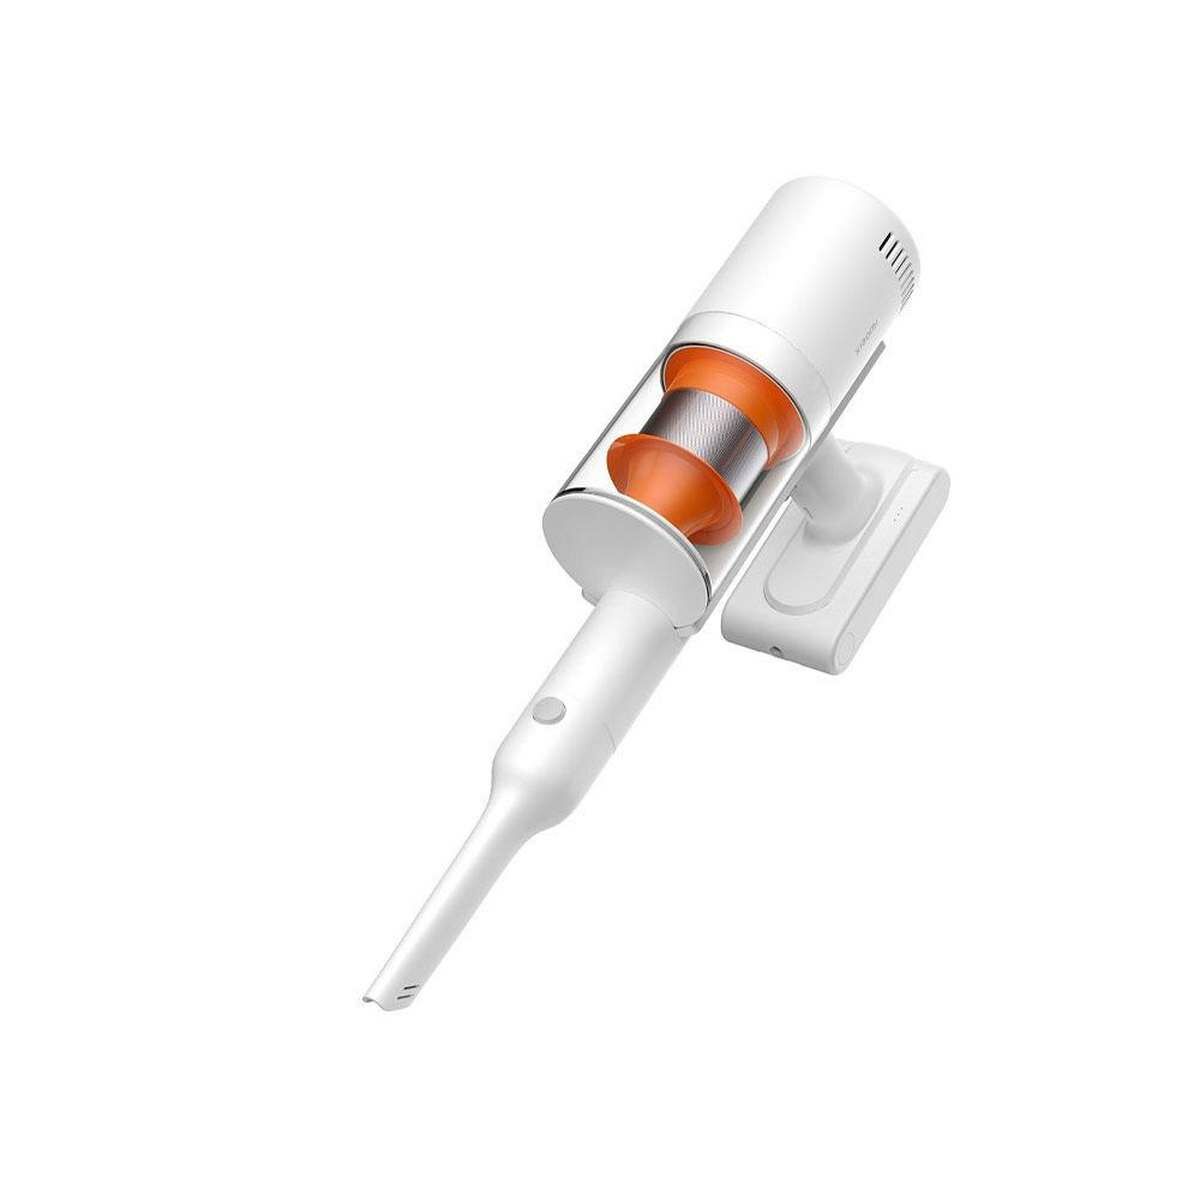 Xiaomi Vacuum Cleaner Mi Handheld Cordless G11 vezeték nélküli porszívó, fehér EU BHR5512EU